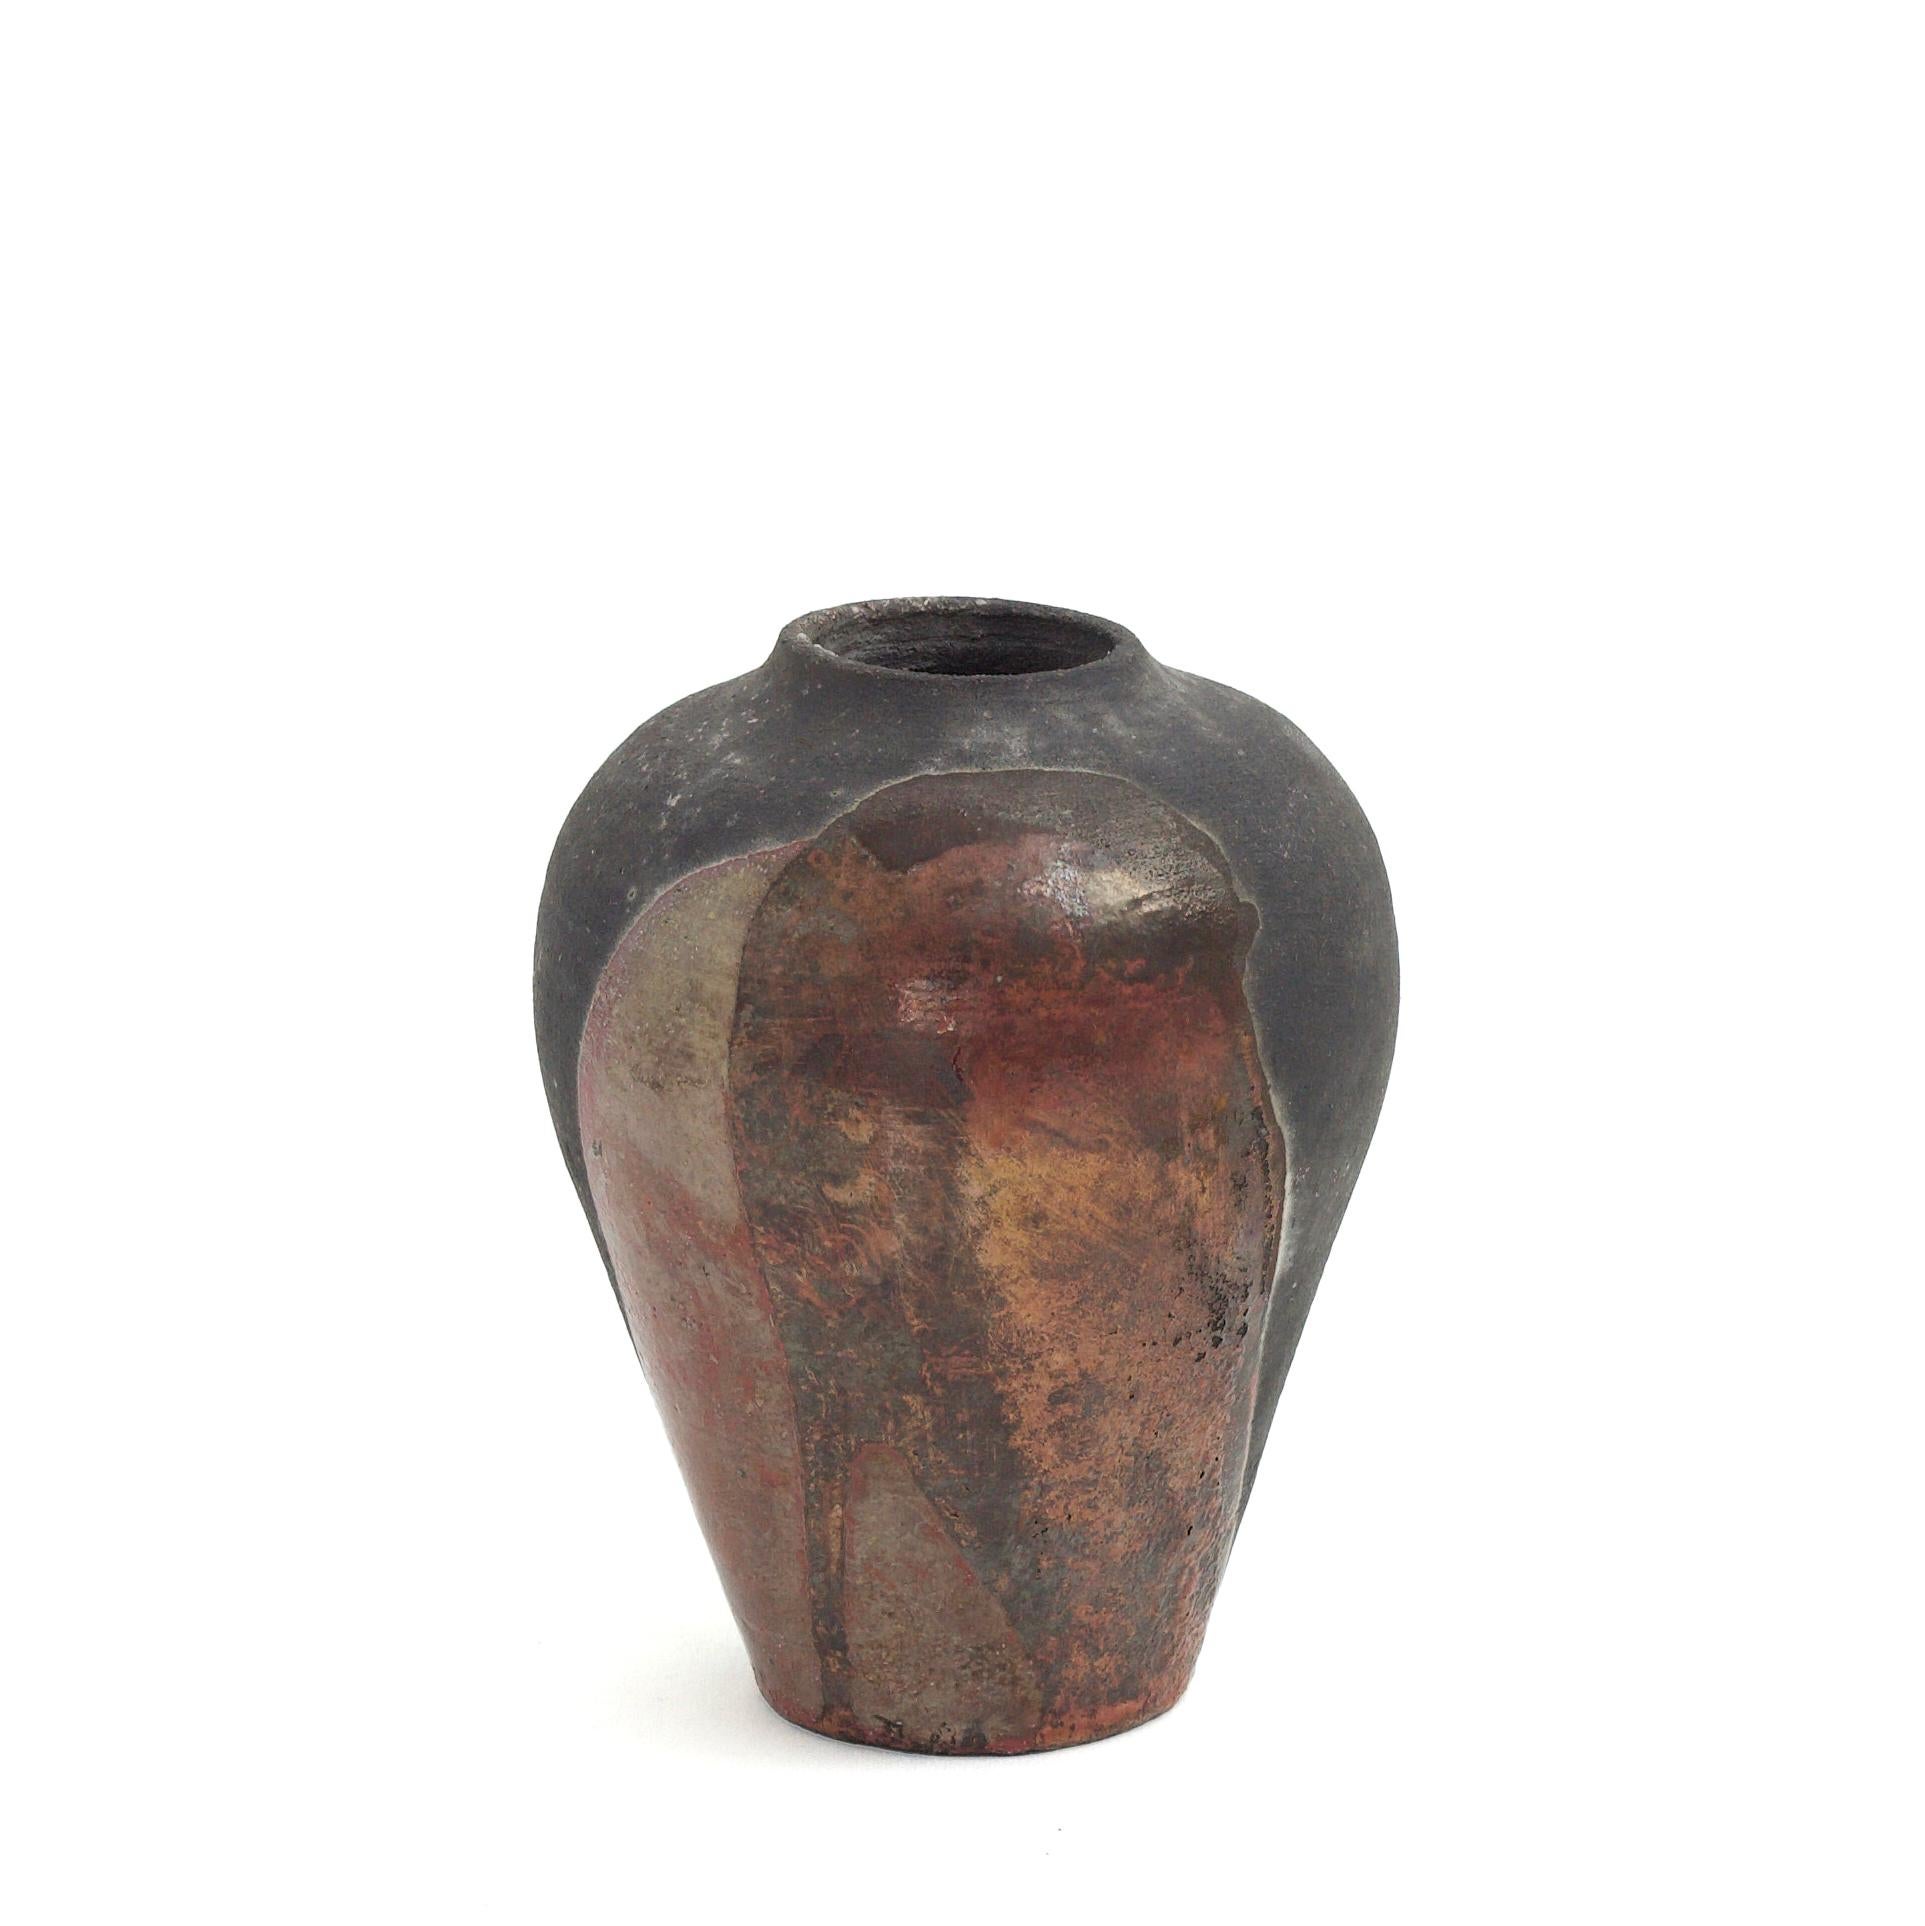 Vase Hydria

Empruntant la silhouette généreuse des amphores de la Grèce antique, ce superbe vase en céramique est le résultat d'un processus artisanal minutieux exécuté selon la technique traditionnelle japonaise Raku. La finition brute et mate